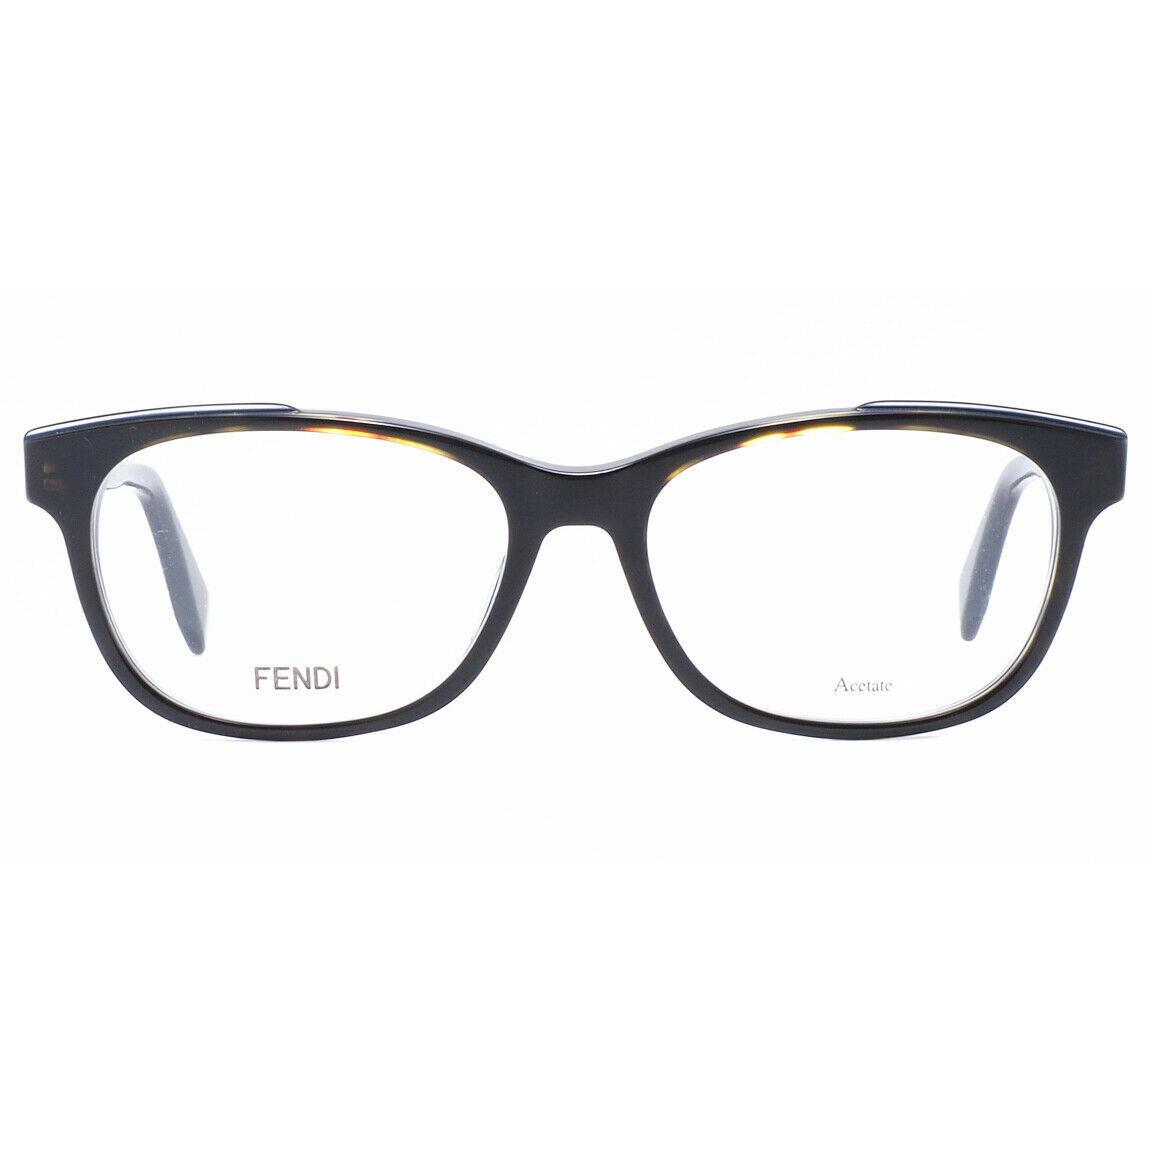 Fendi Eyeglasses - FF 0257/F 0086 - Dark Havana Brown 52-16-140